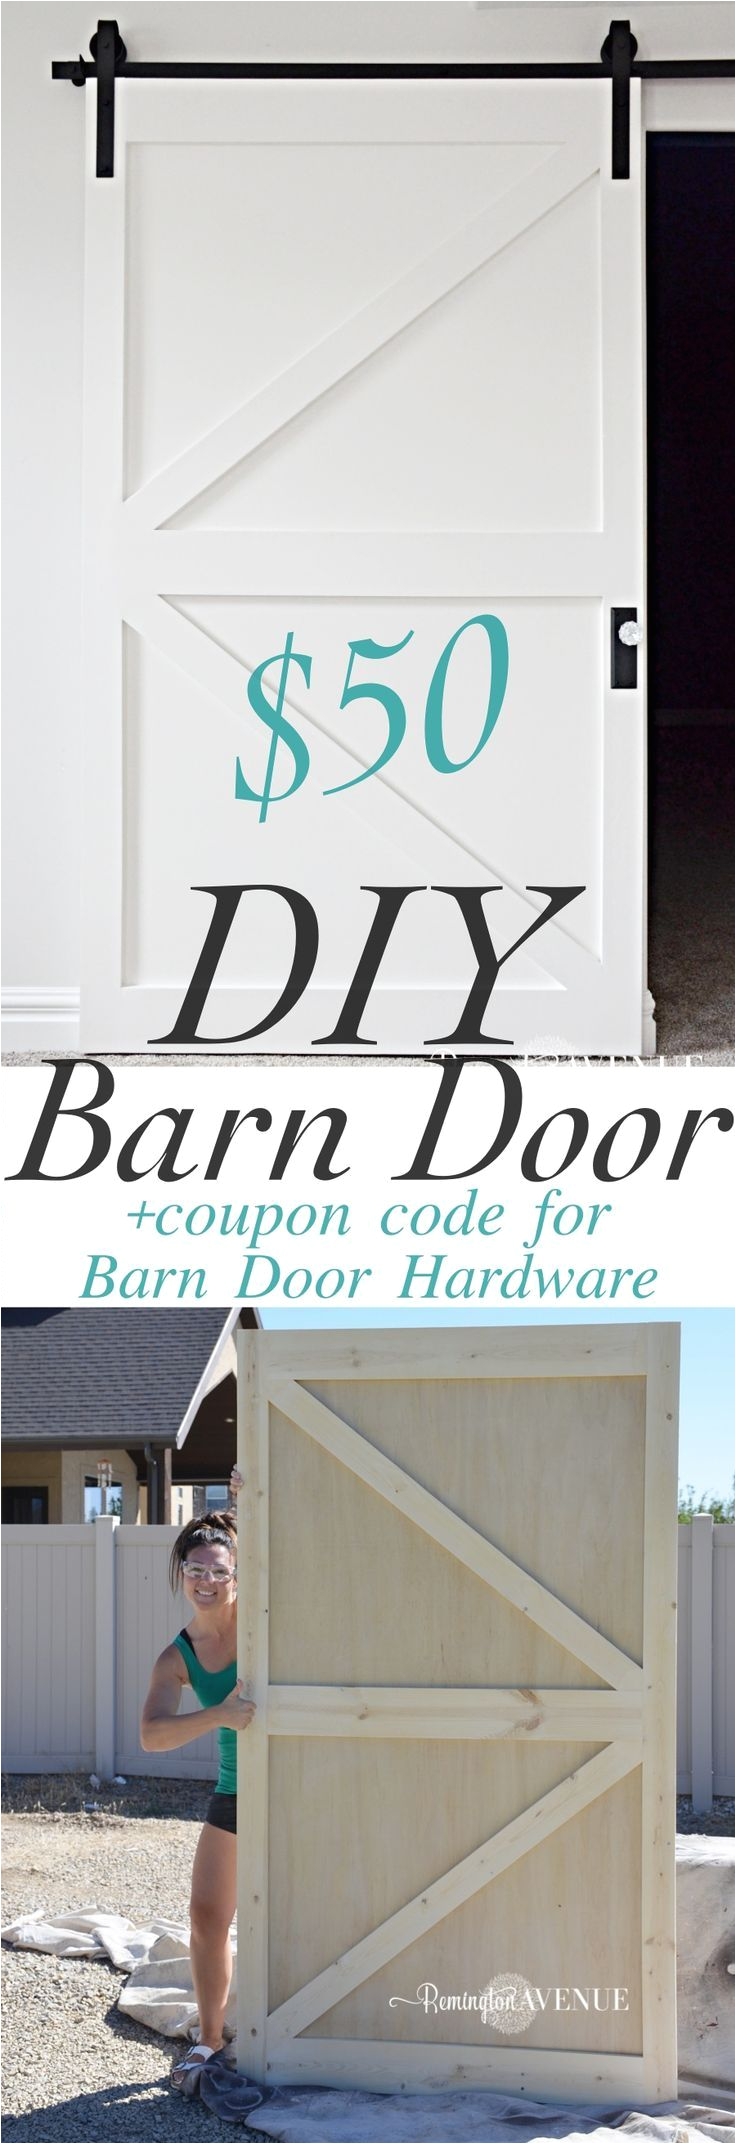 50 diy british brace barn door with promo code for the barn door hardware store